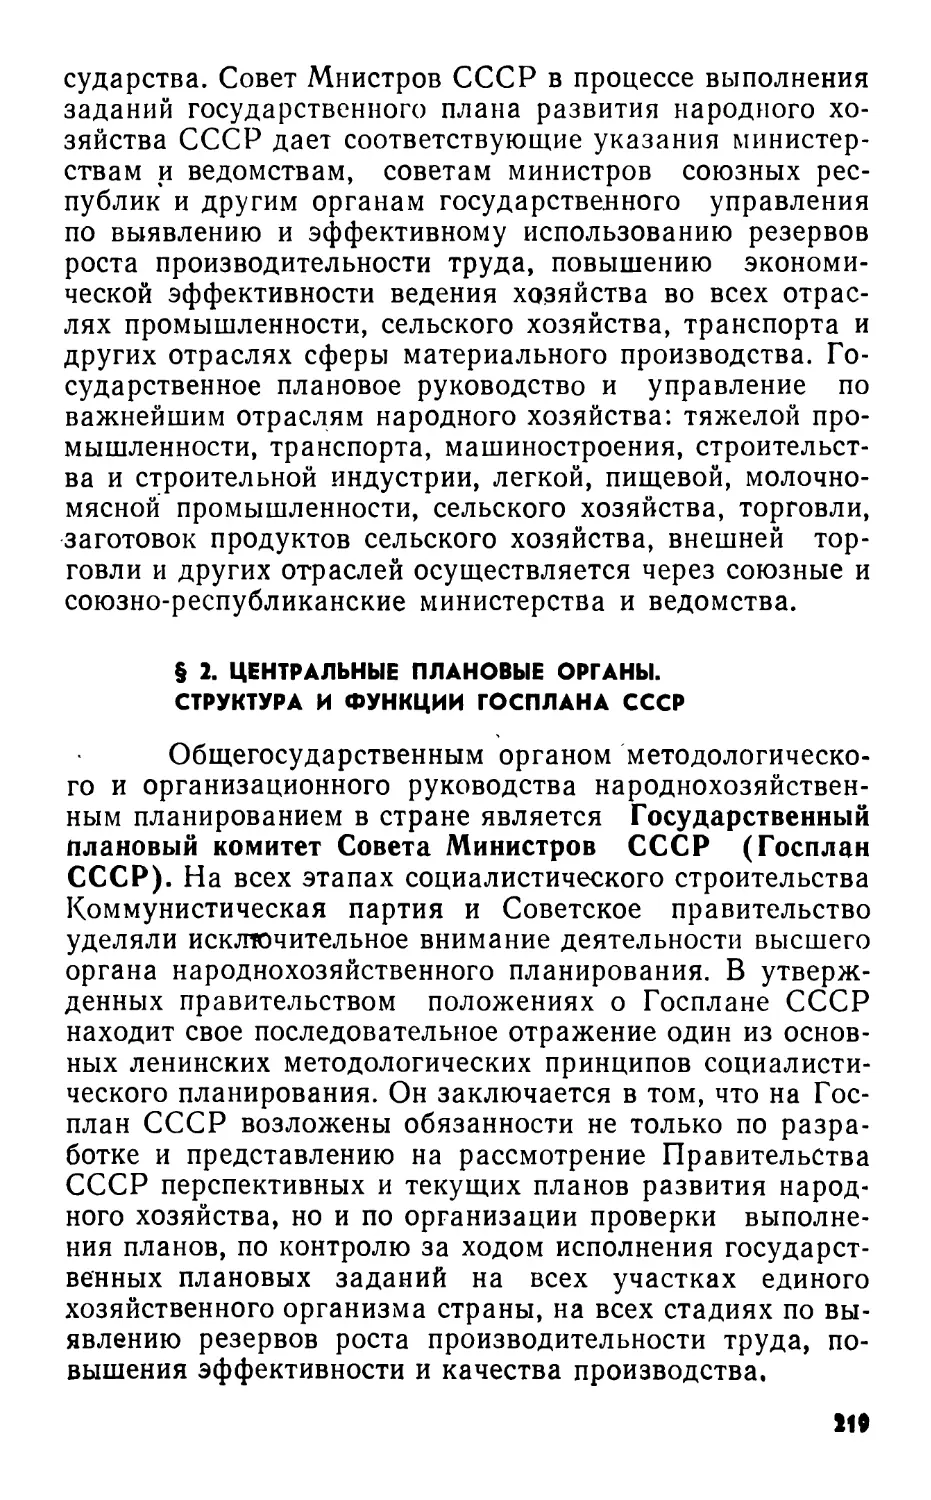 § 2. Центральные плановые органы. Структура и функции Госплана СССР